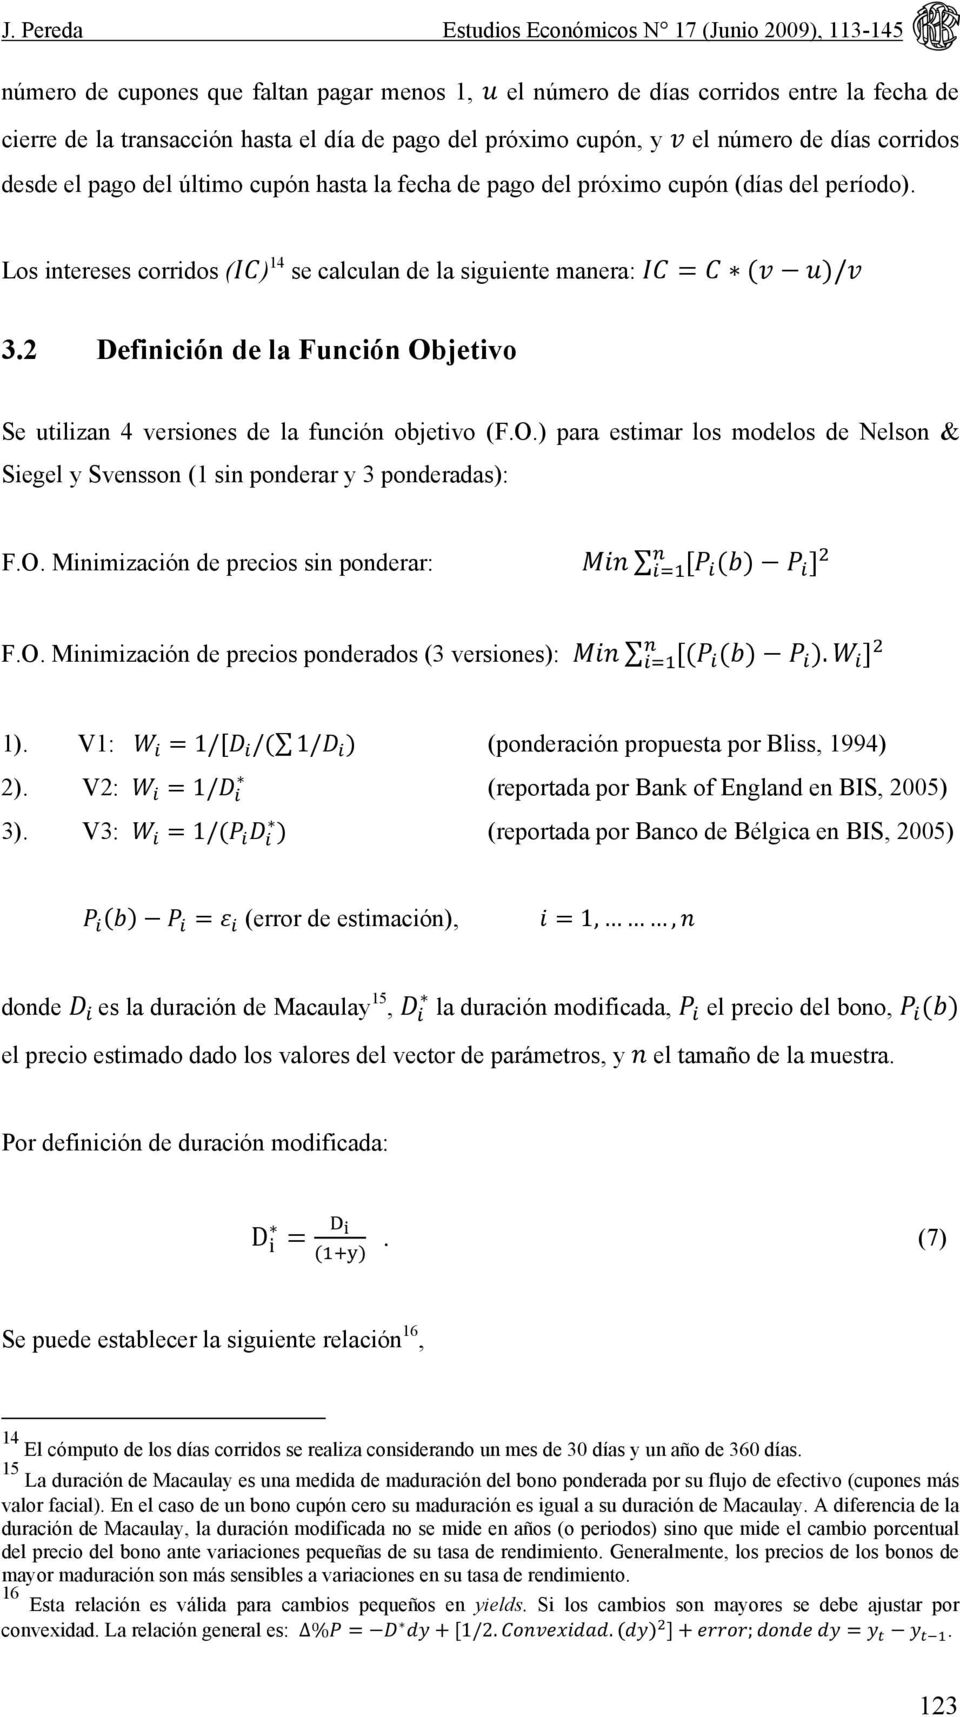 Los intereses corridos () 14 se calculan de la siguiente manera: / 3.2 Definición de la Función Objetivo Se utilizan 4 versiones de la función objetivo (F.O.) para estimar los modelos de Nelson & Siegel y Svensson (1 sin ponderar y 3 ponderadas): F.